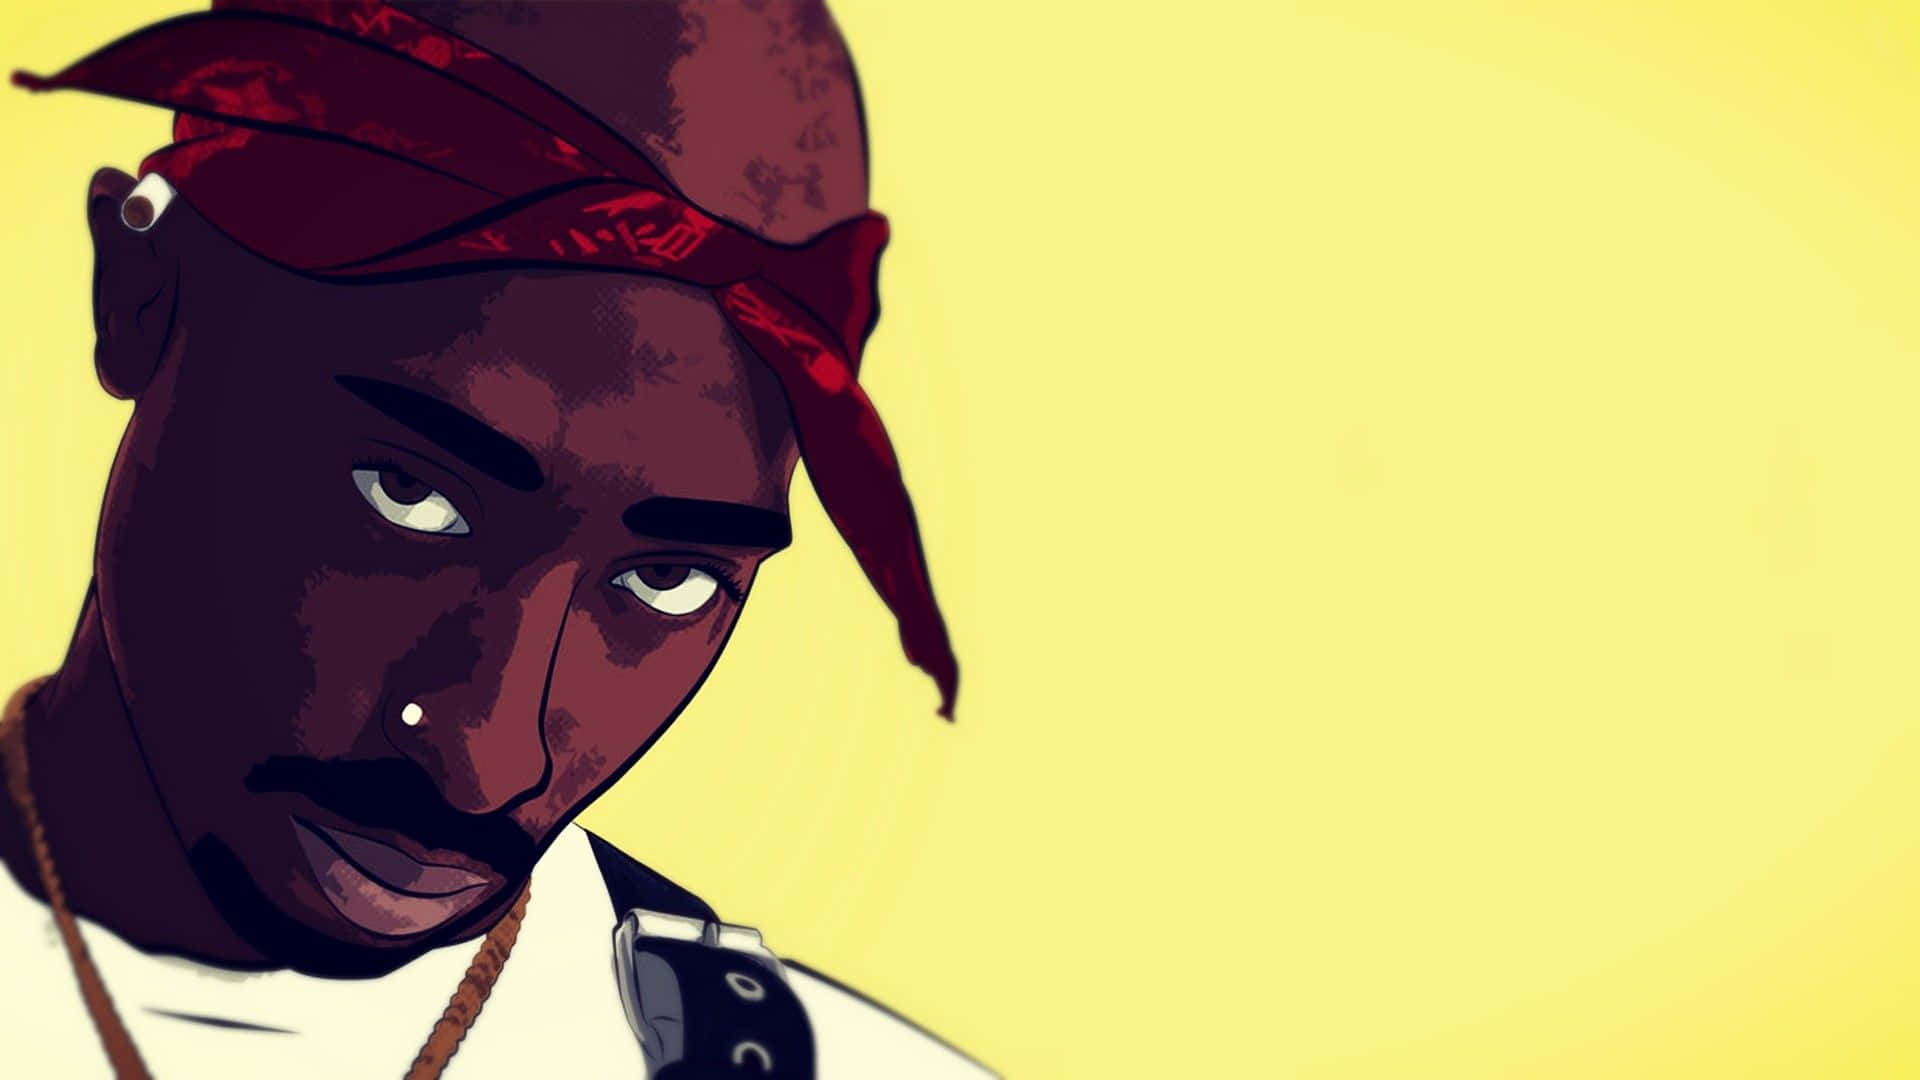 Papelde Parede De Computador Ou Celular Com O Rapper Tupac Amarelo Em Versão Cartoon. Papel de Parede